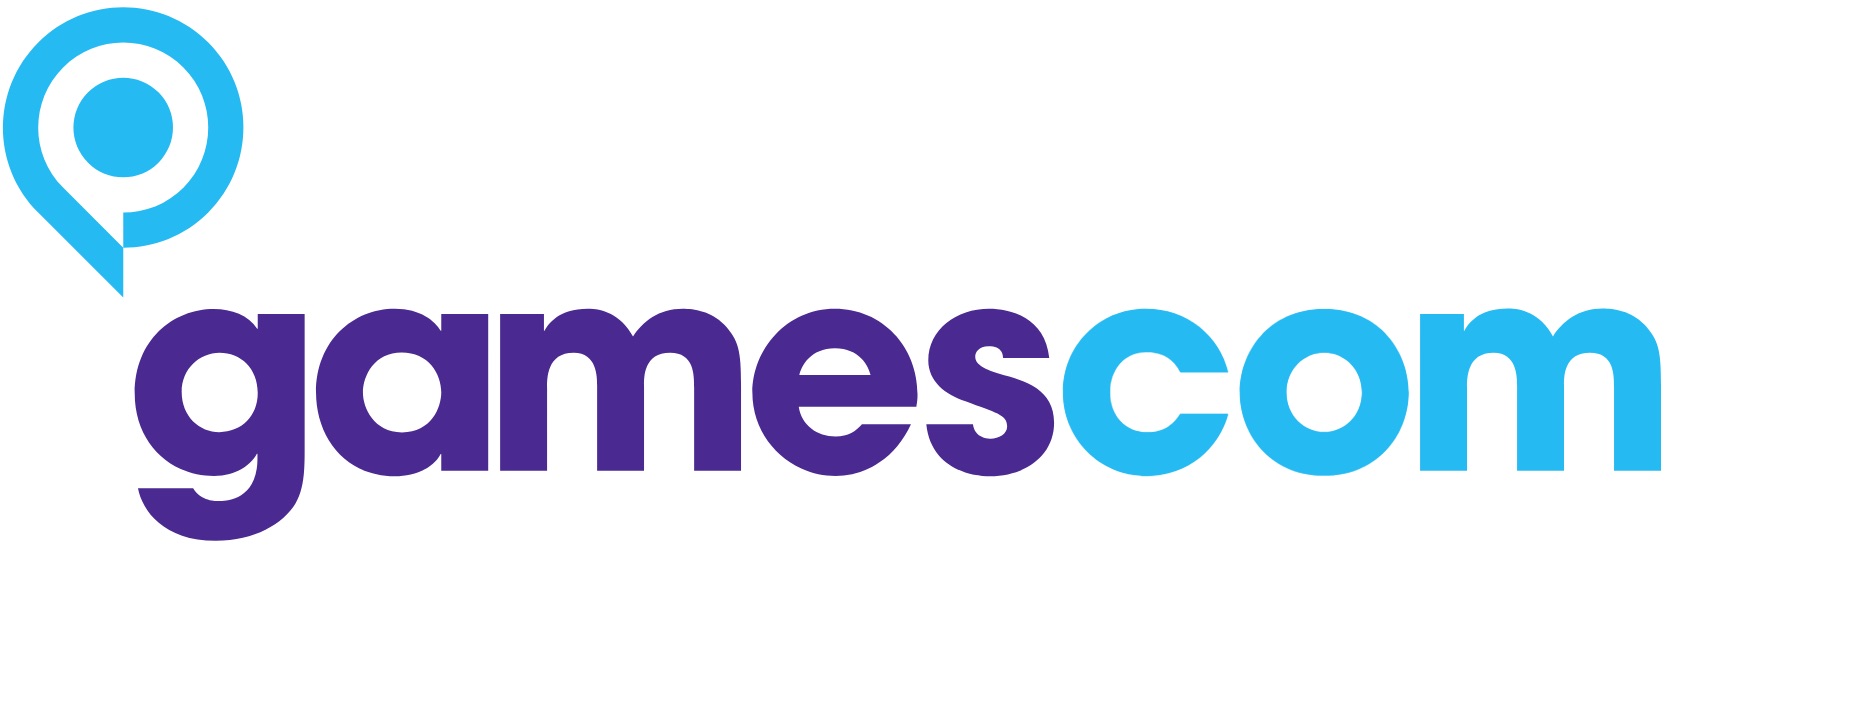 gamescom logo